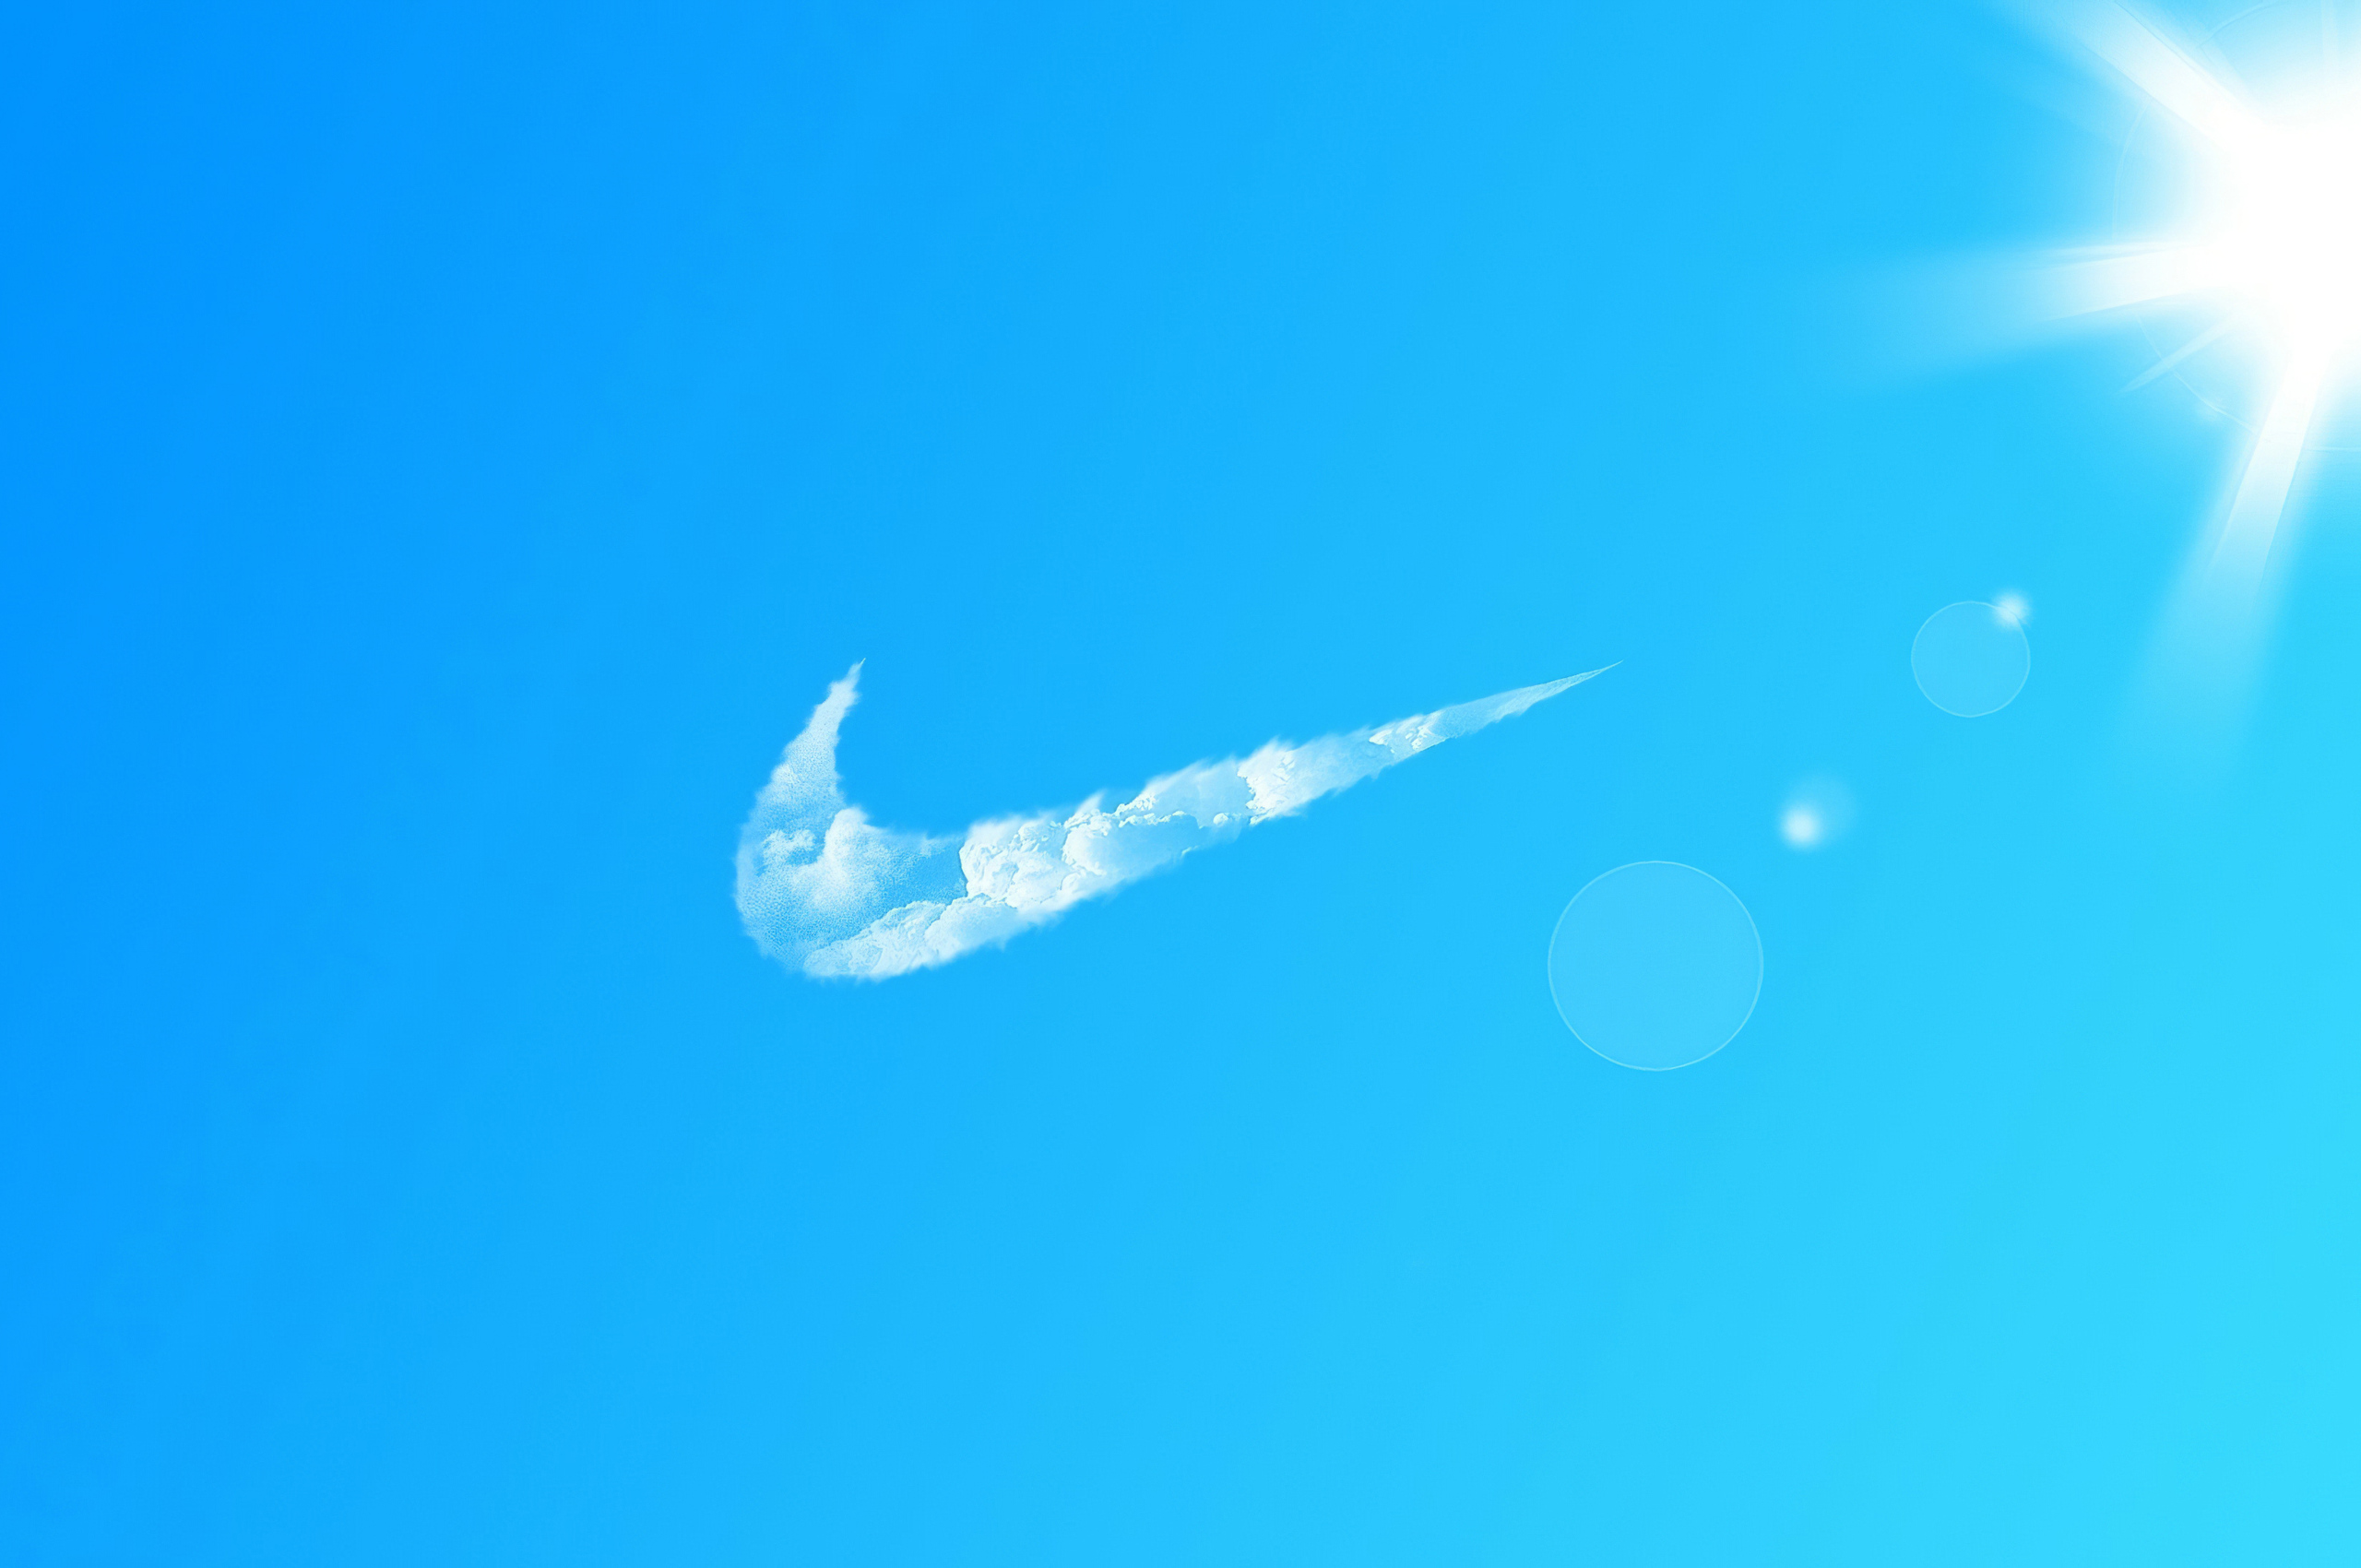 Nike Cloud Wallpapers